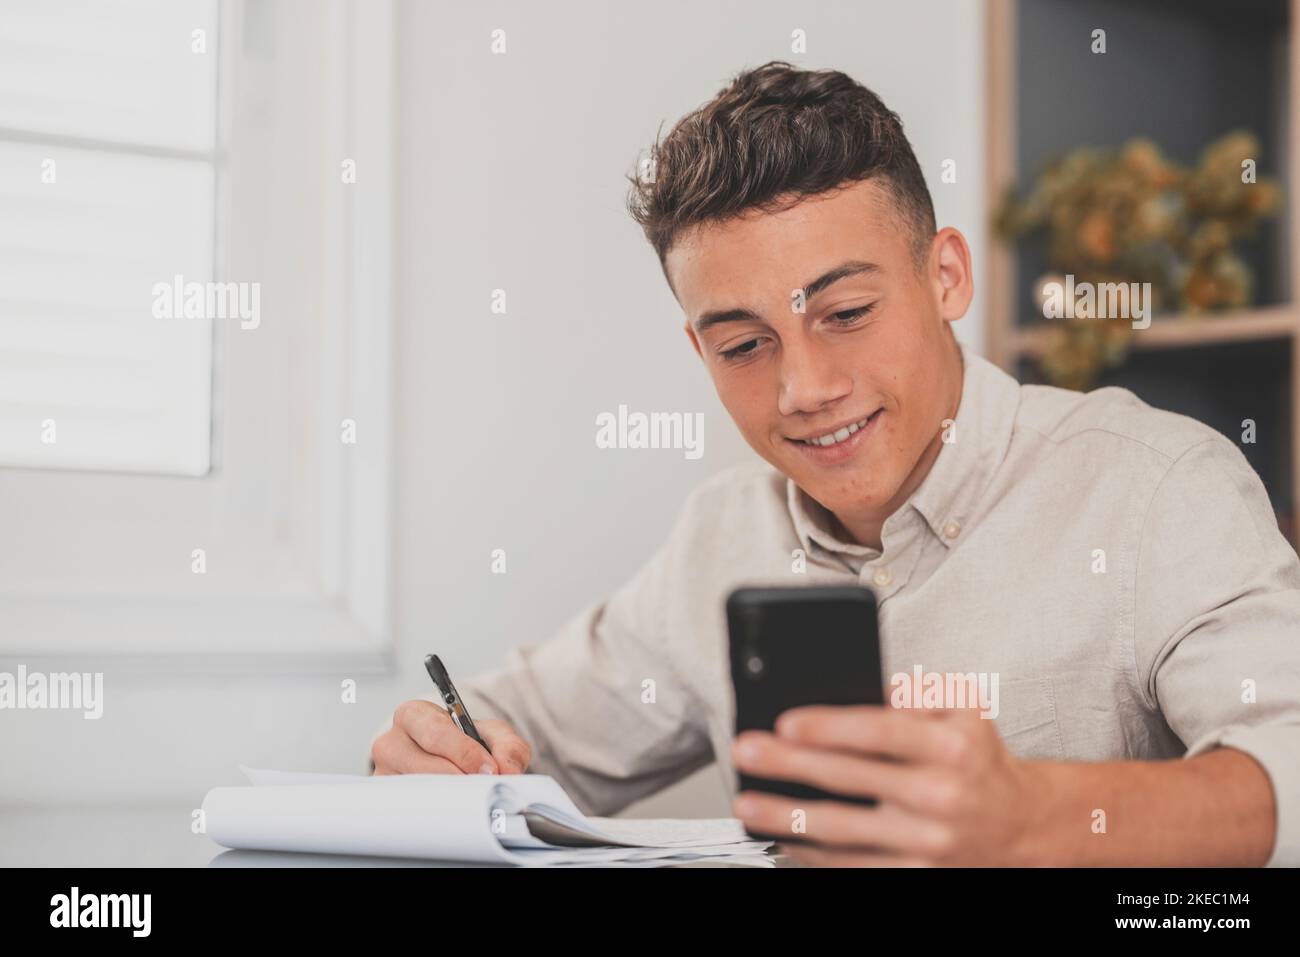 Glücklicher junger Mann, der sein Smartphone zu Hause benutzt, um Hausaufgaben zu machen und alleine in der Halle Spaß zu haben. Männliche Teenager mit Telefon genießen Freizeit studieren und arbeiten. Stockfoto